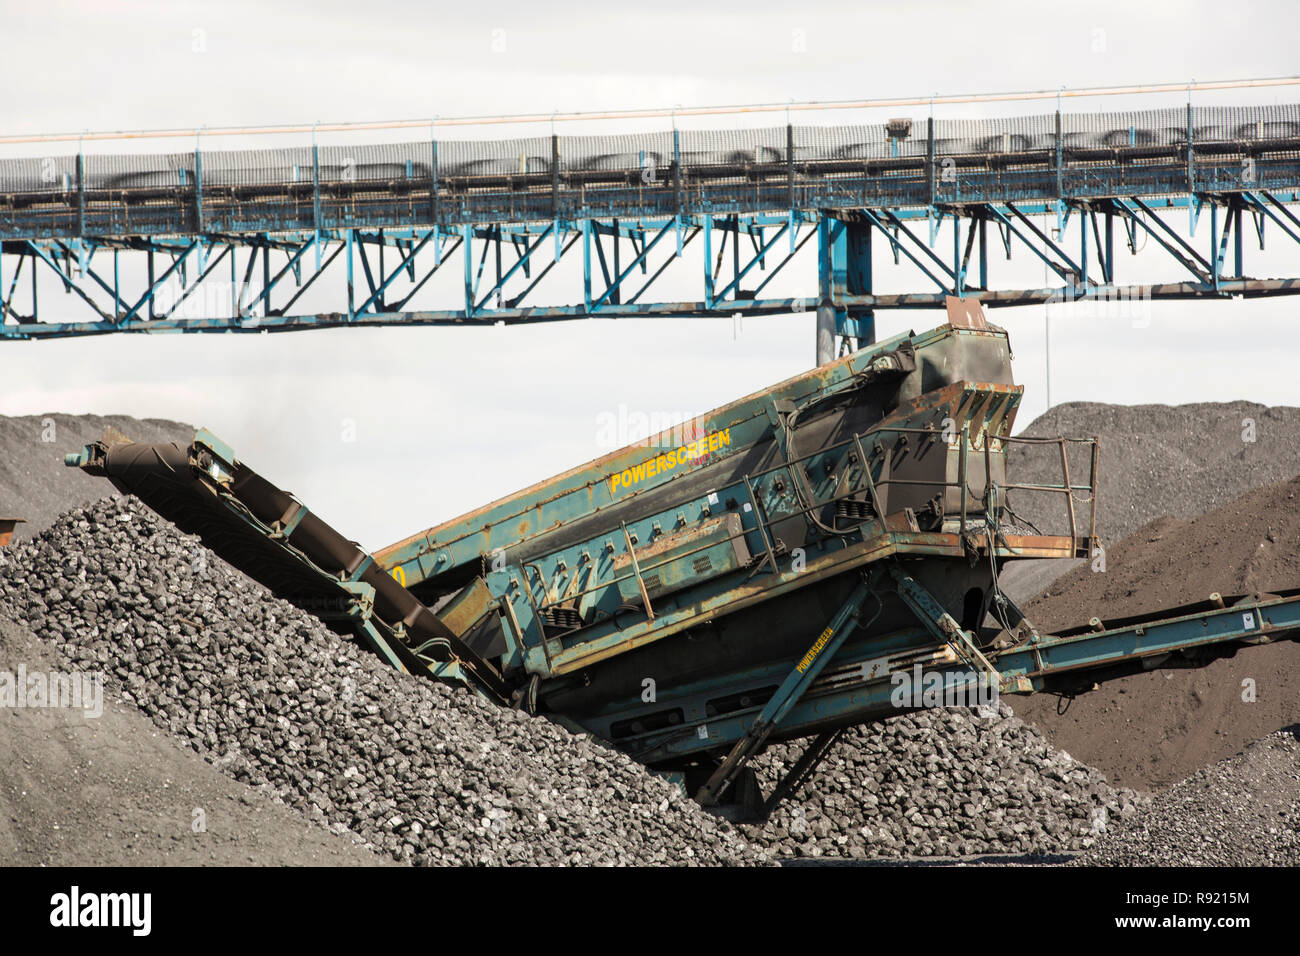 Sur les quais de charbon à Hull, sur l'estuaire de la Humber, Yorkshire, Angleterre, Royaume-Uni Banque D'Images